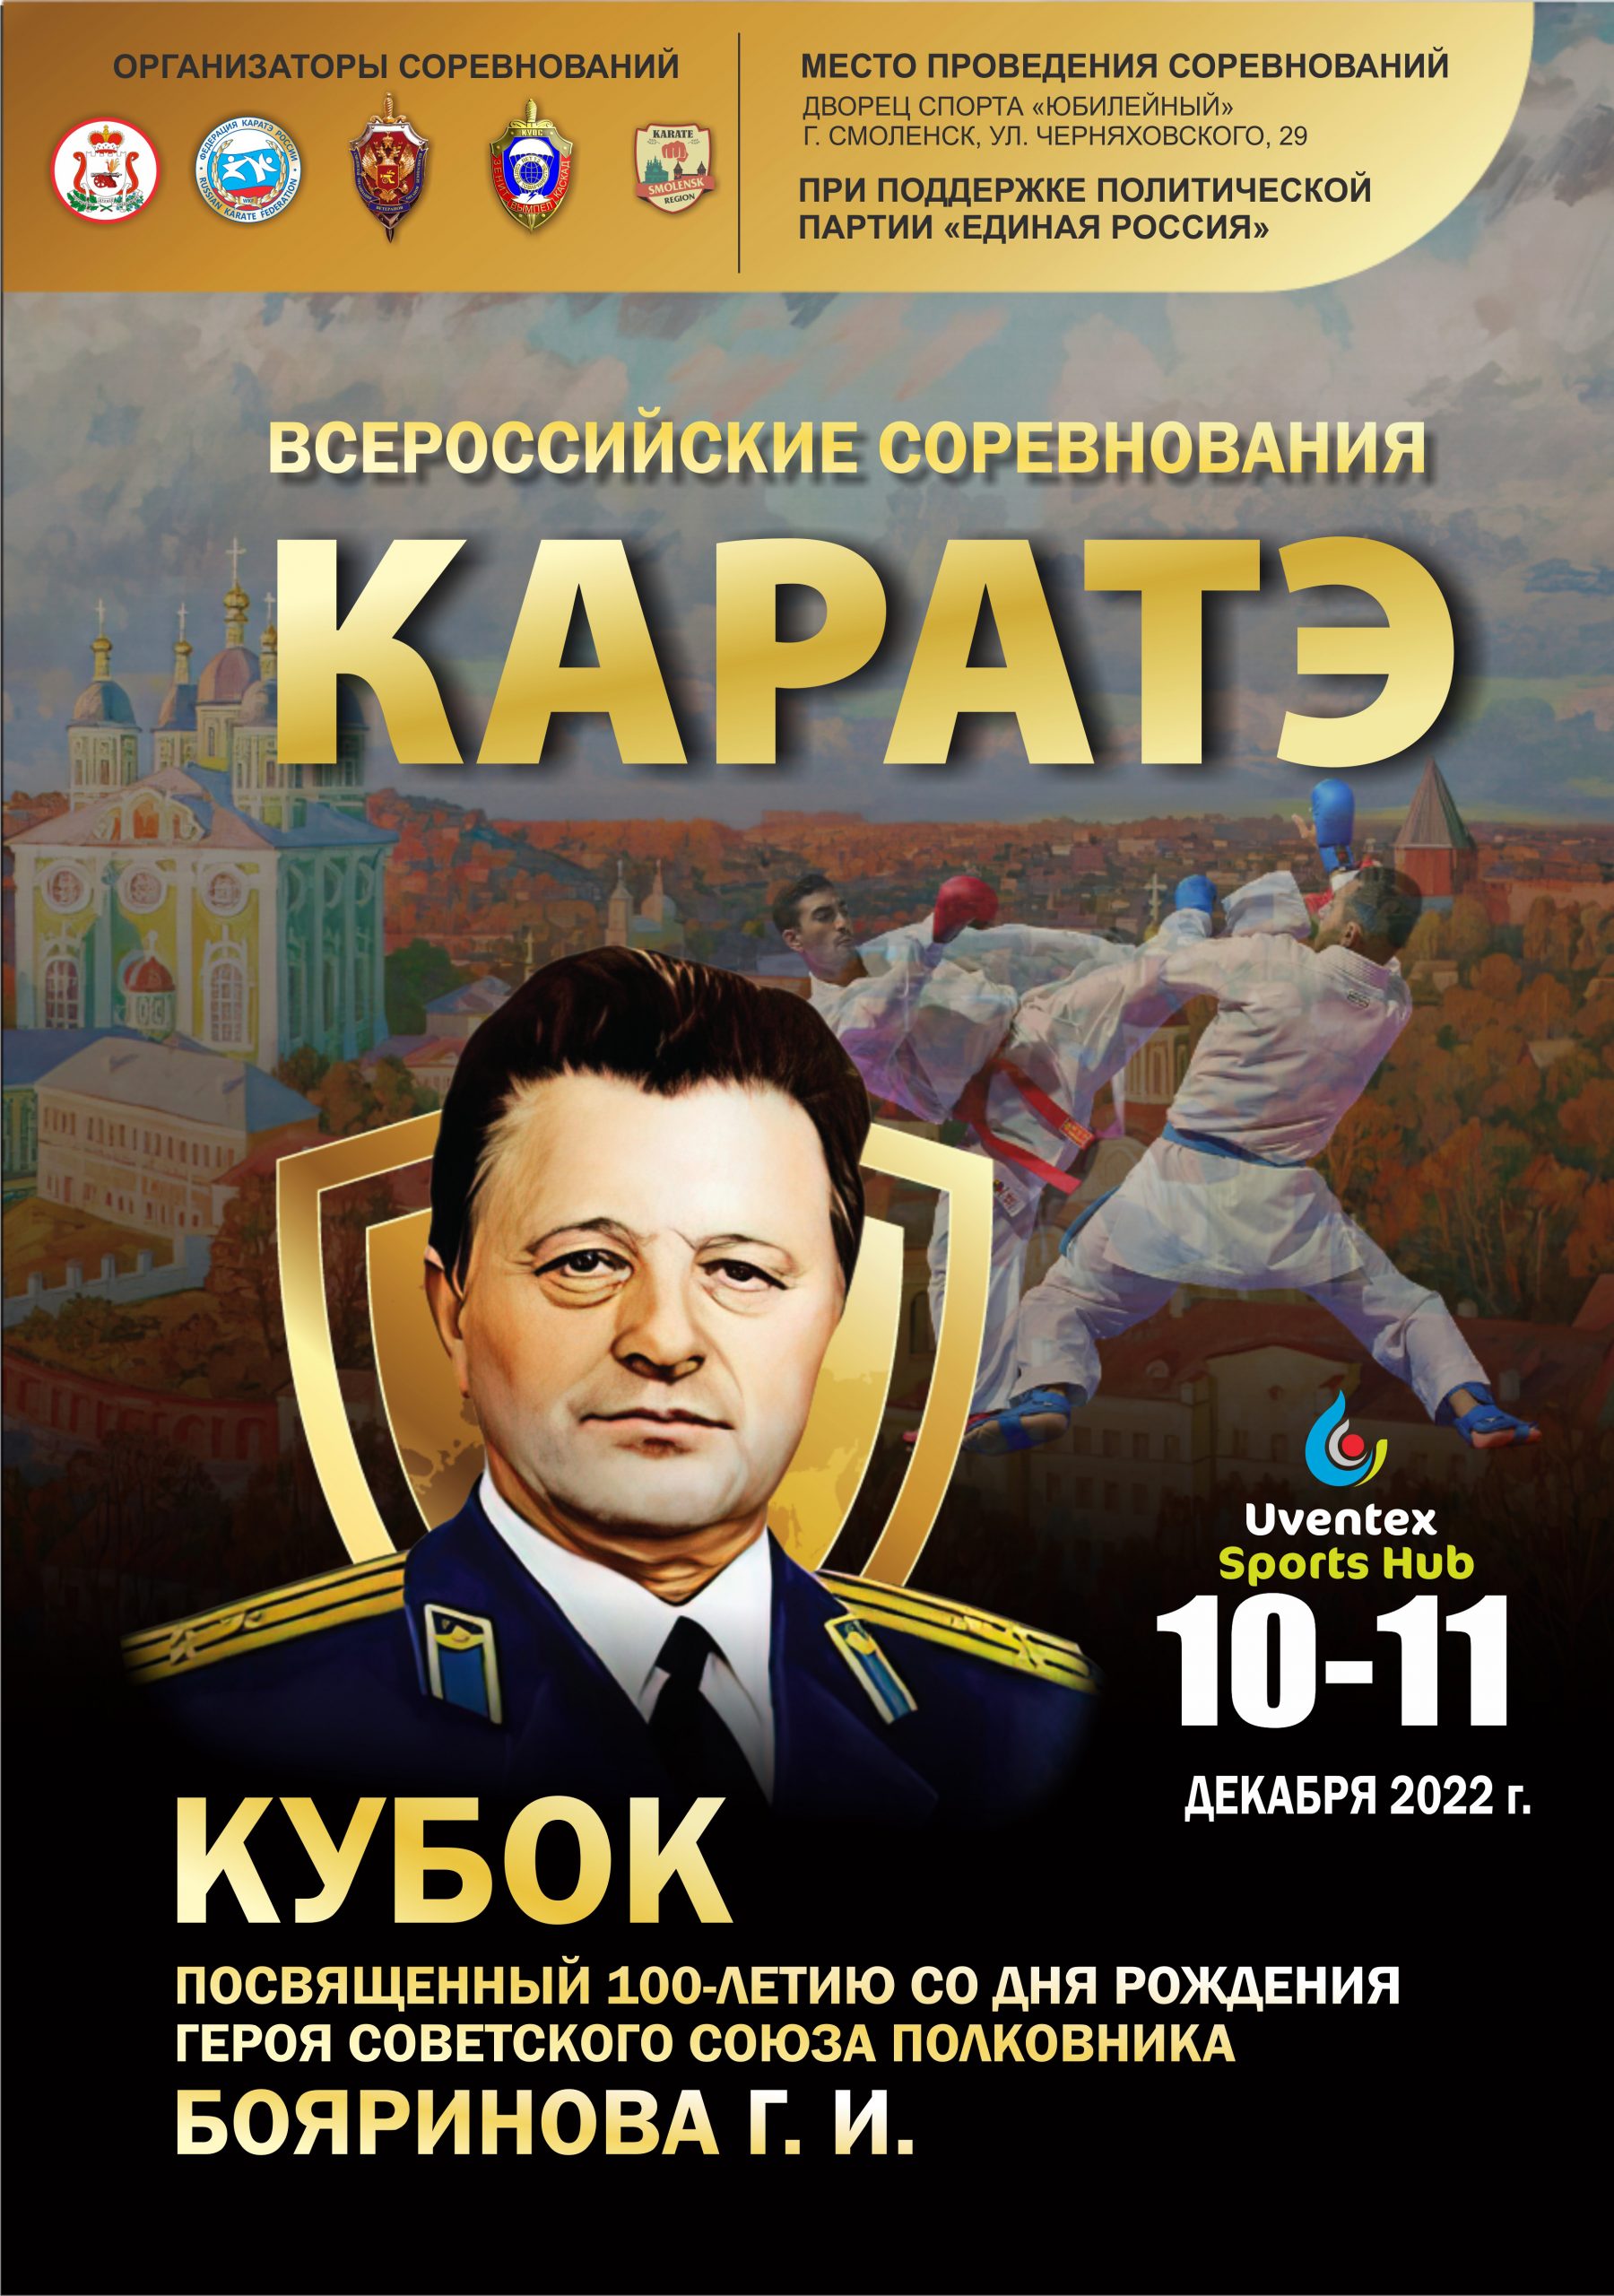 Афиша А3«Кубка Бояринова по каратэ». Смоленск, 11-12.12.2022